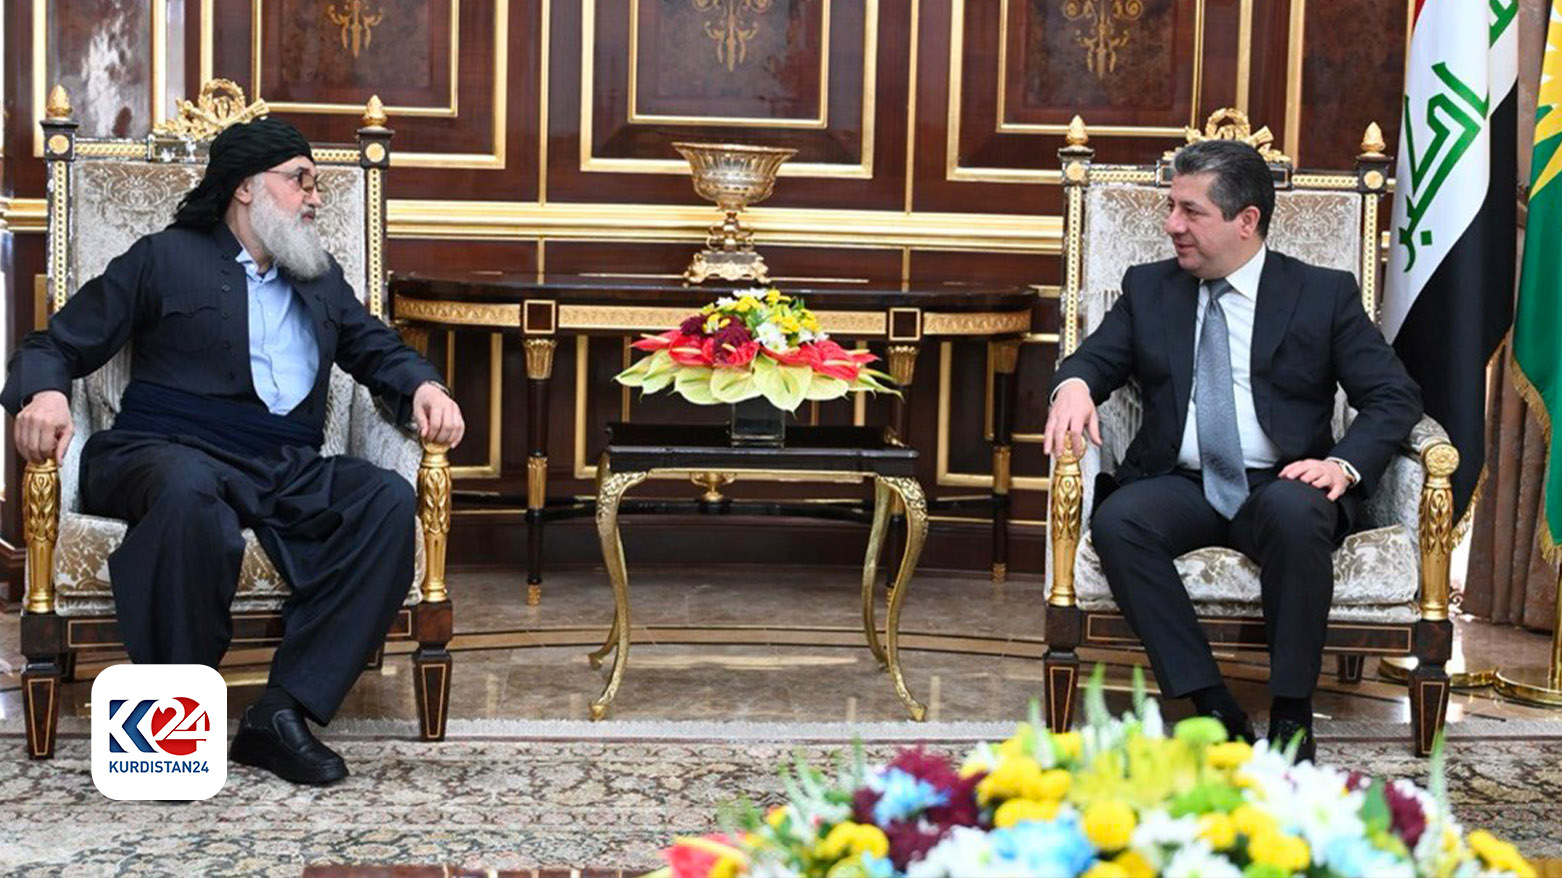 رئيس حكومة إقليم كوردستان مسرور بارزاني والمرشد العام للحركة الإسلامية في كوردستان